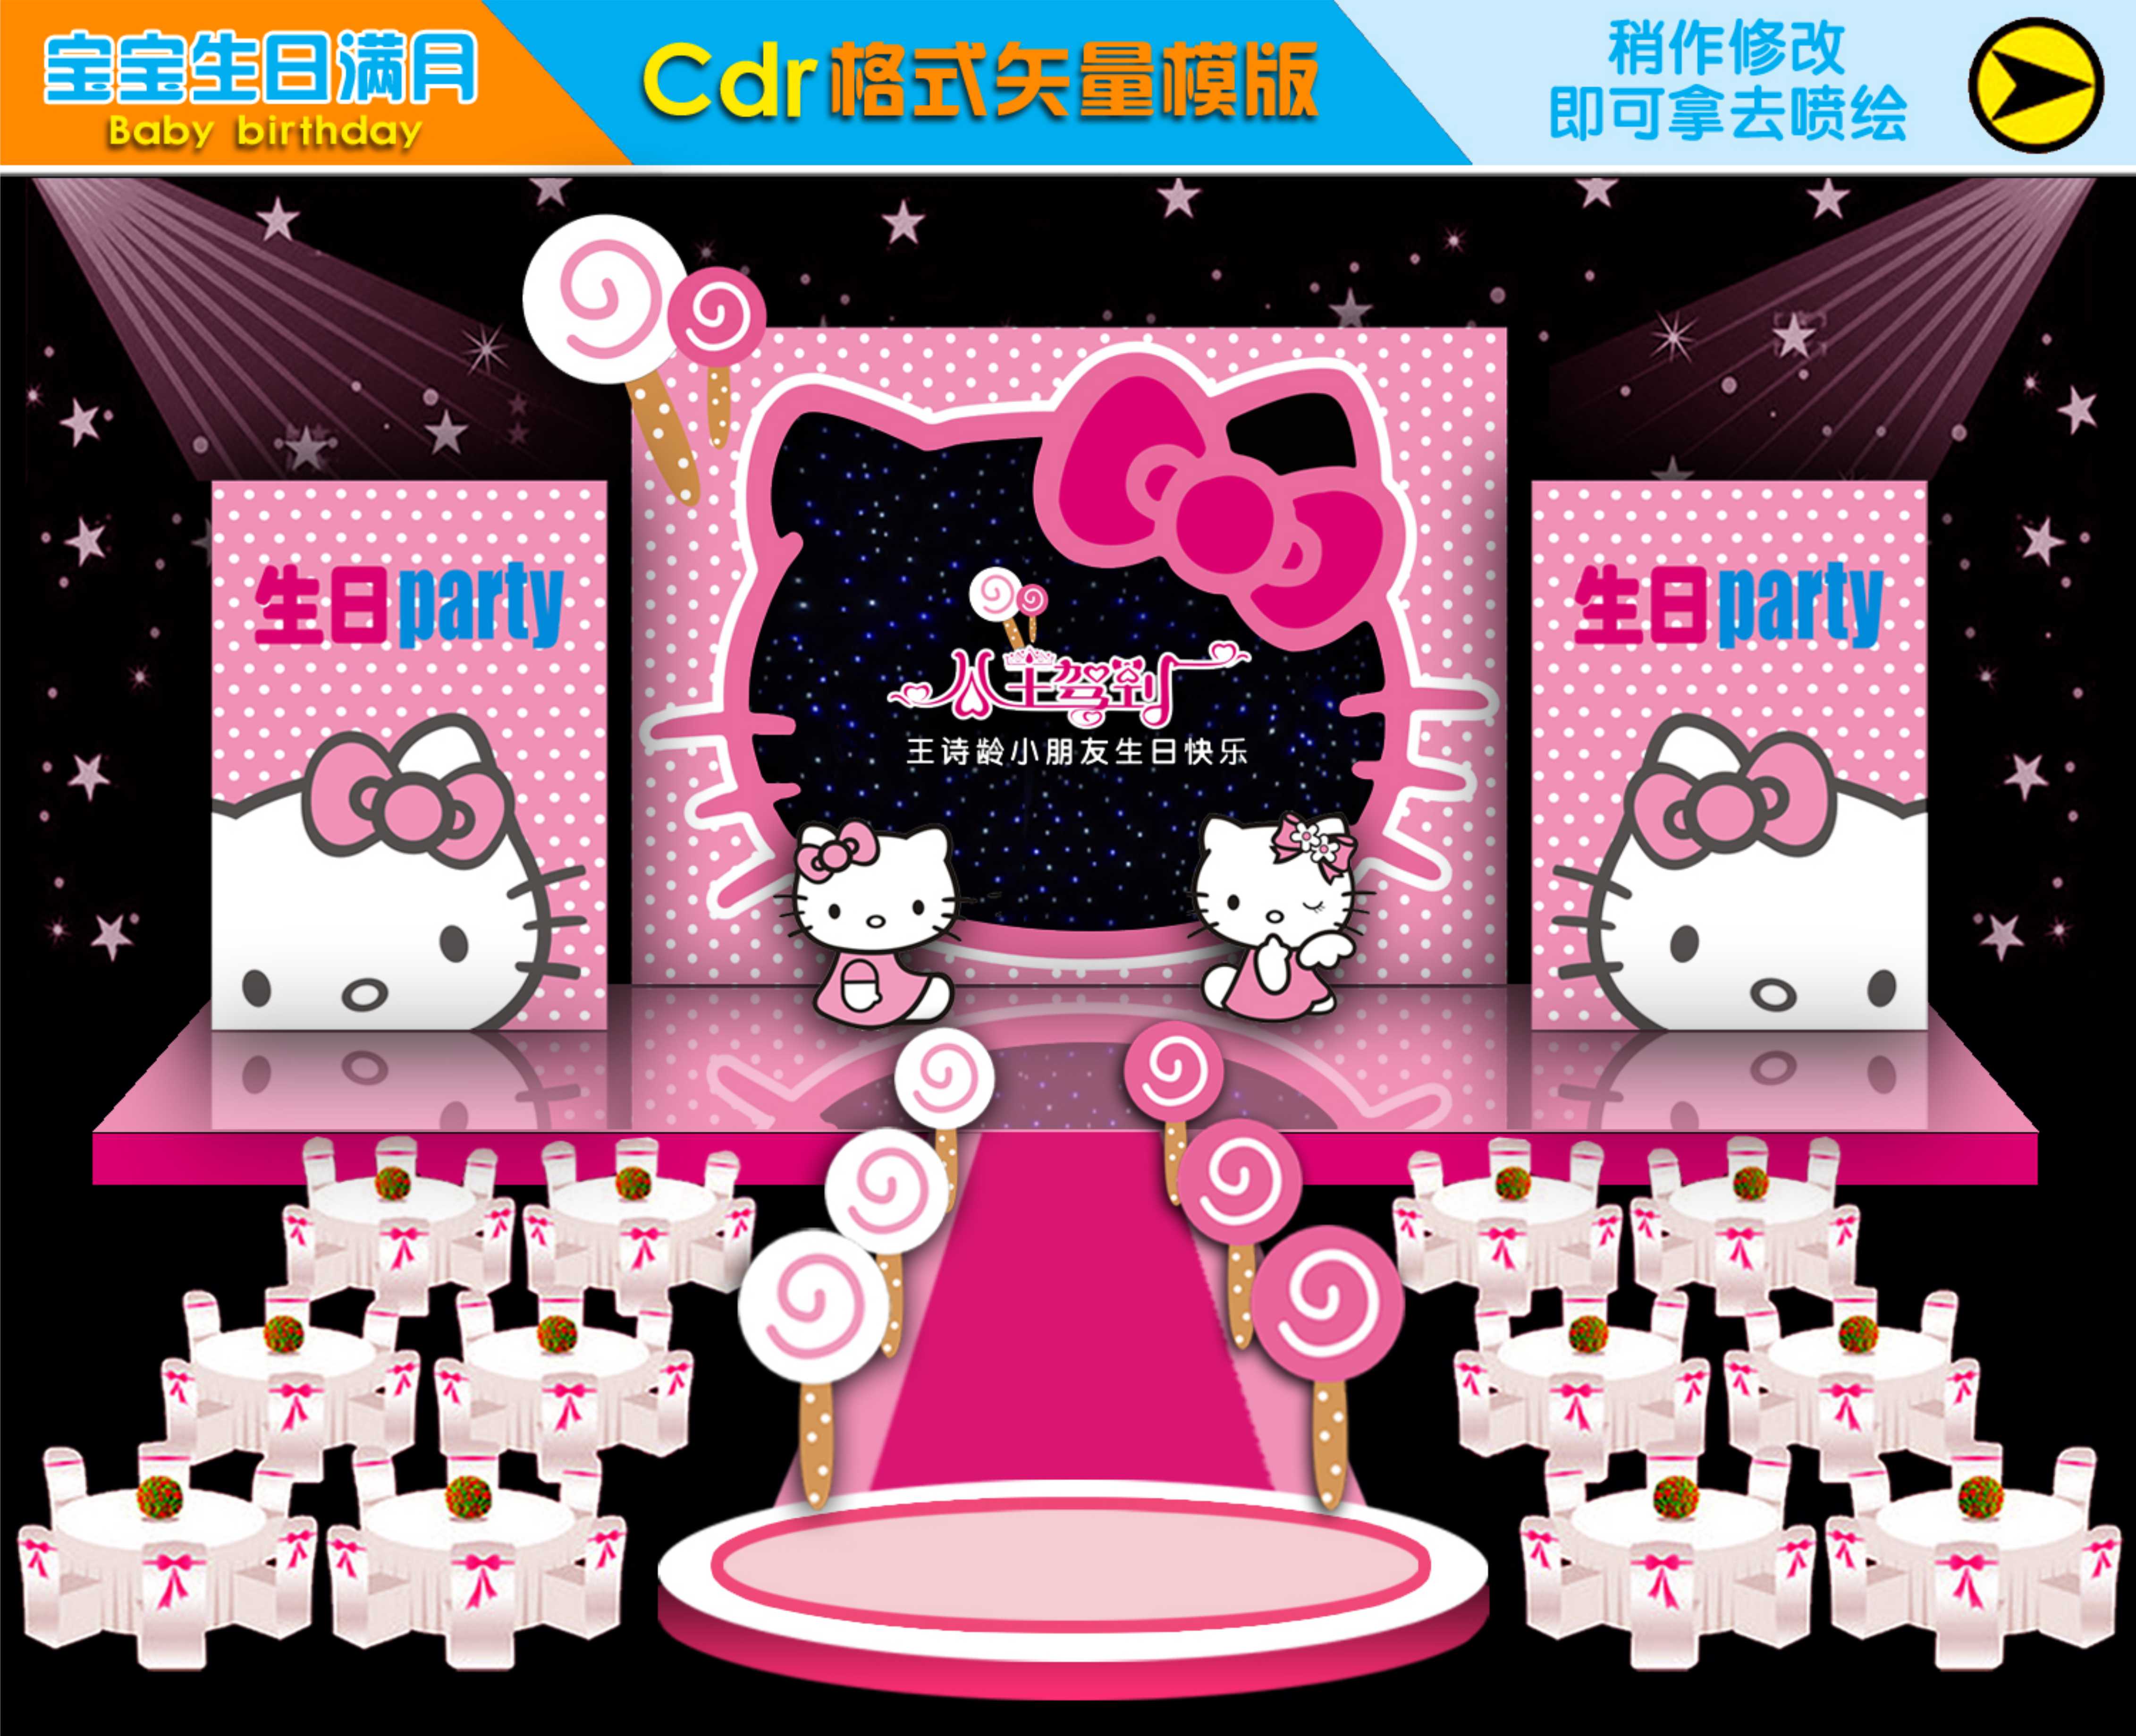 粉色Hello Kitty凯蒂猫主题宝宝满月百日宴生日派对背景设计素材